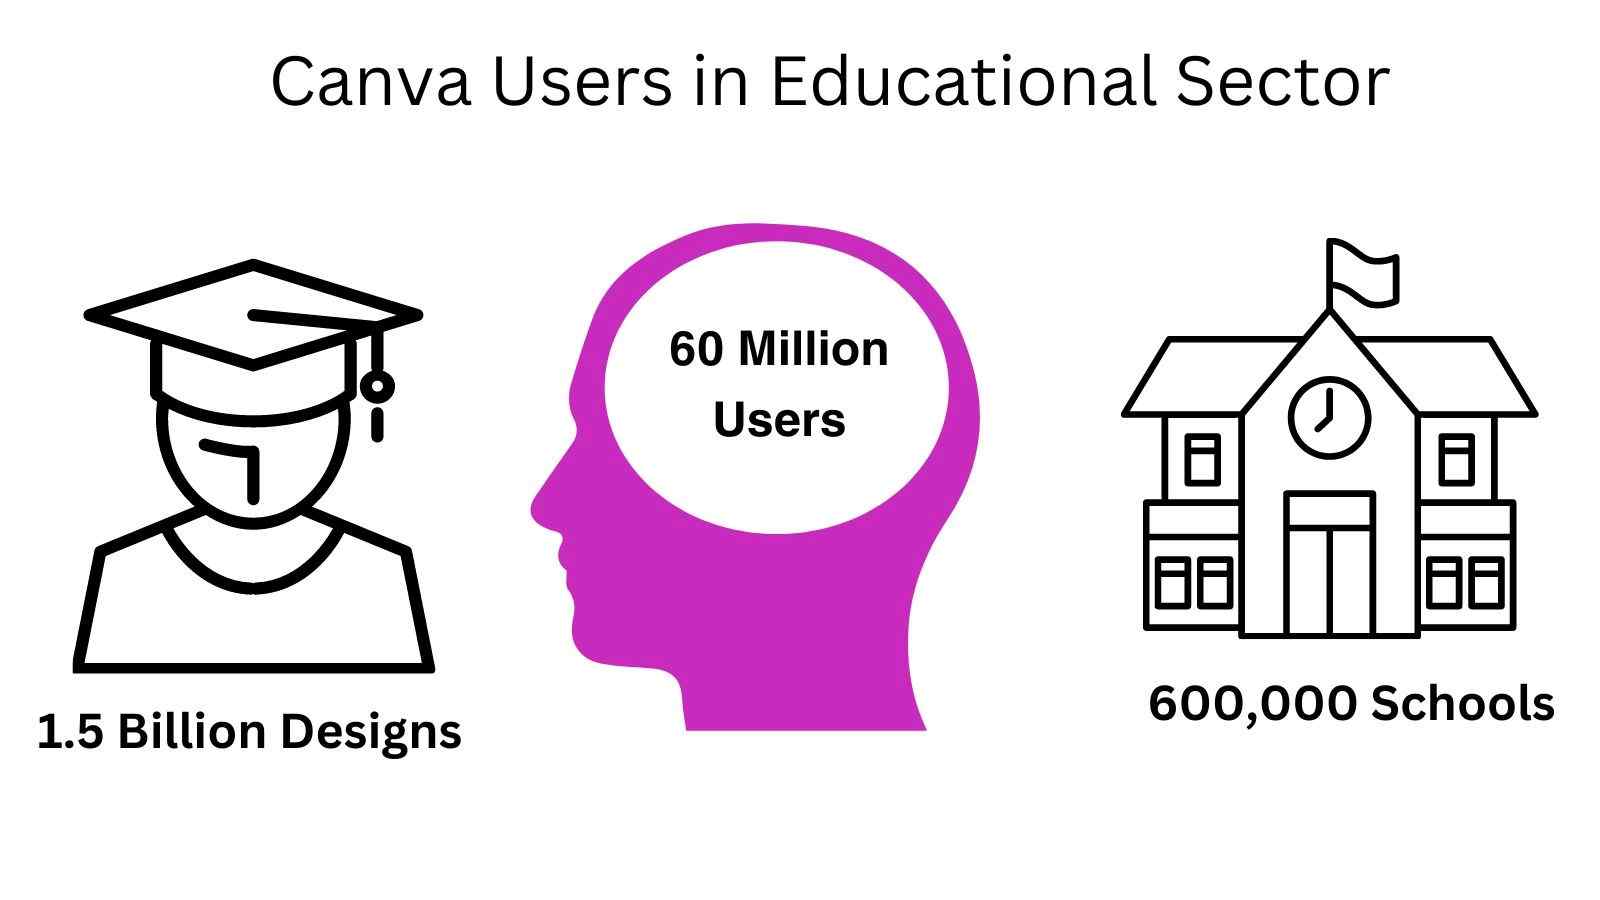  image mettant en valeur les utilisateurs de Canva dans le secteur de l'éducation 